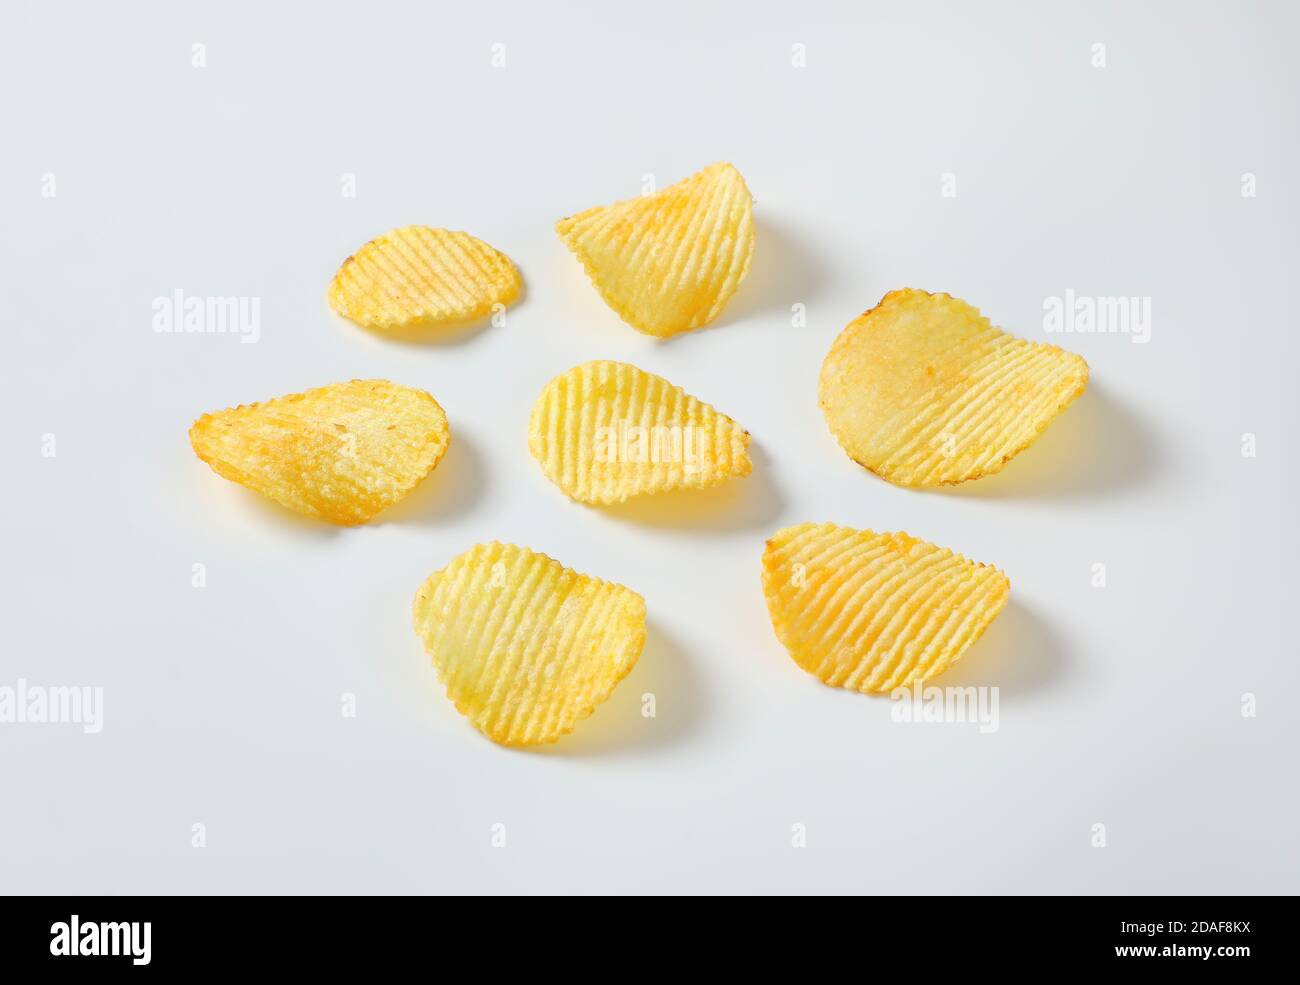 Six thin ridged potato chips Stock Photo